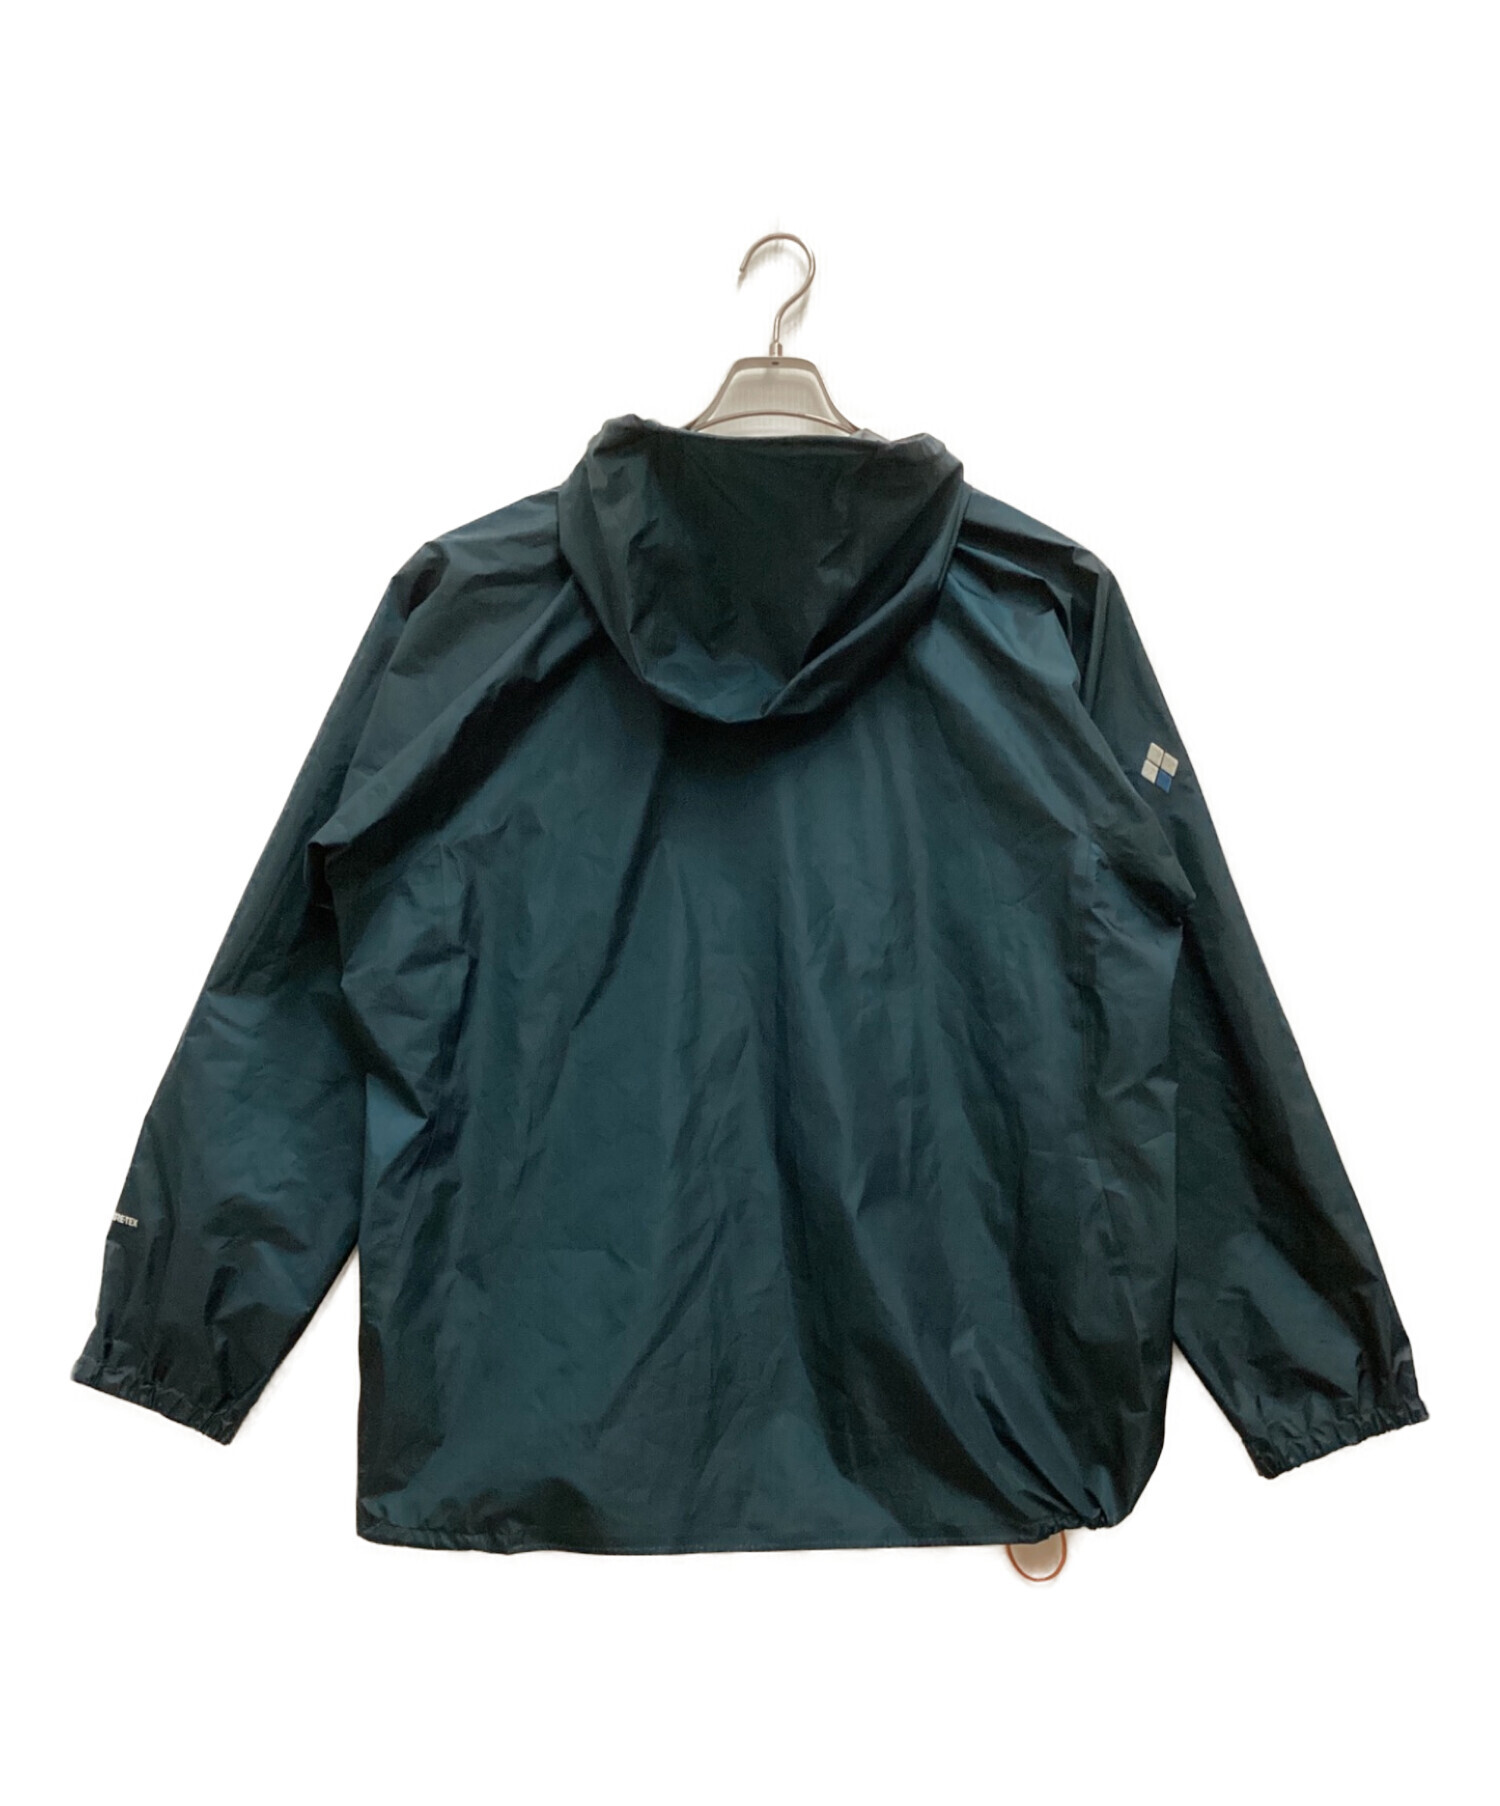 mont-bell (モンベル) ストームクルーザージャケット グリーン サイズ:L-W